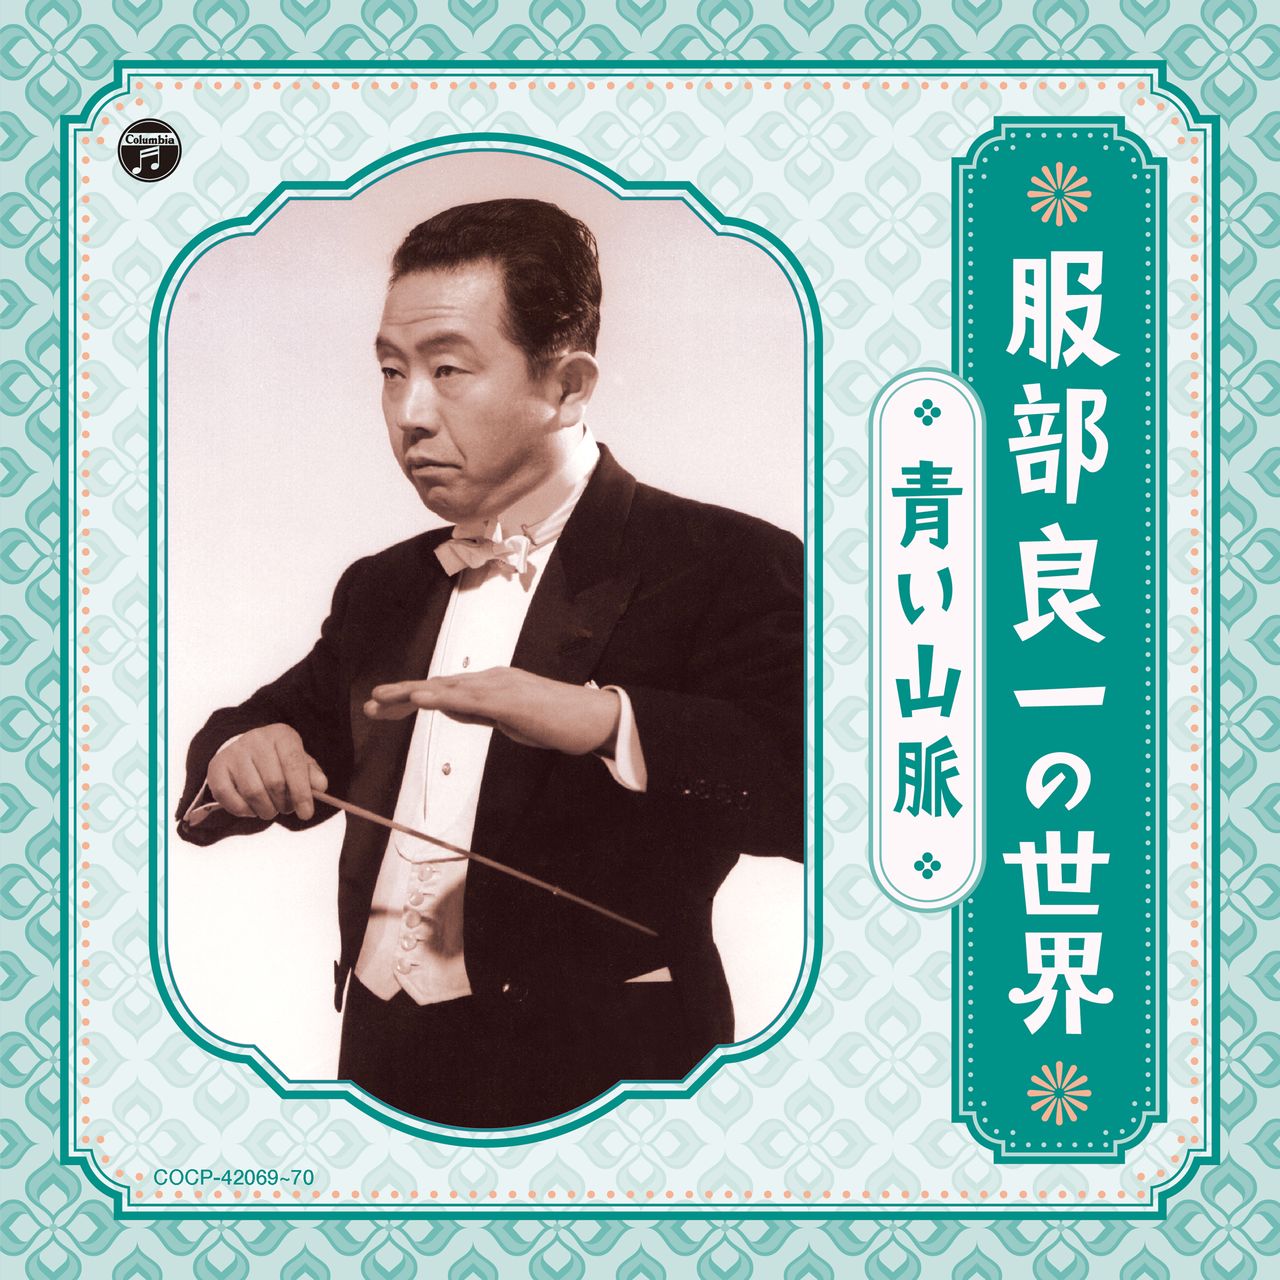 Recopilatorio de canciones de Hattori Ryōichi (1907-1993) seleccionadas por el propio compositor. (Actualmente lo comercializa Nippon Columbia)